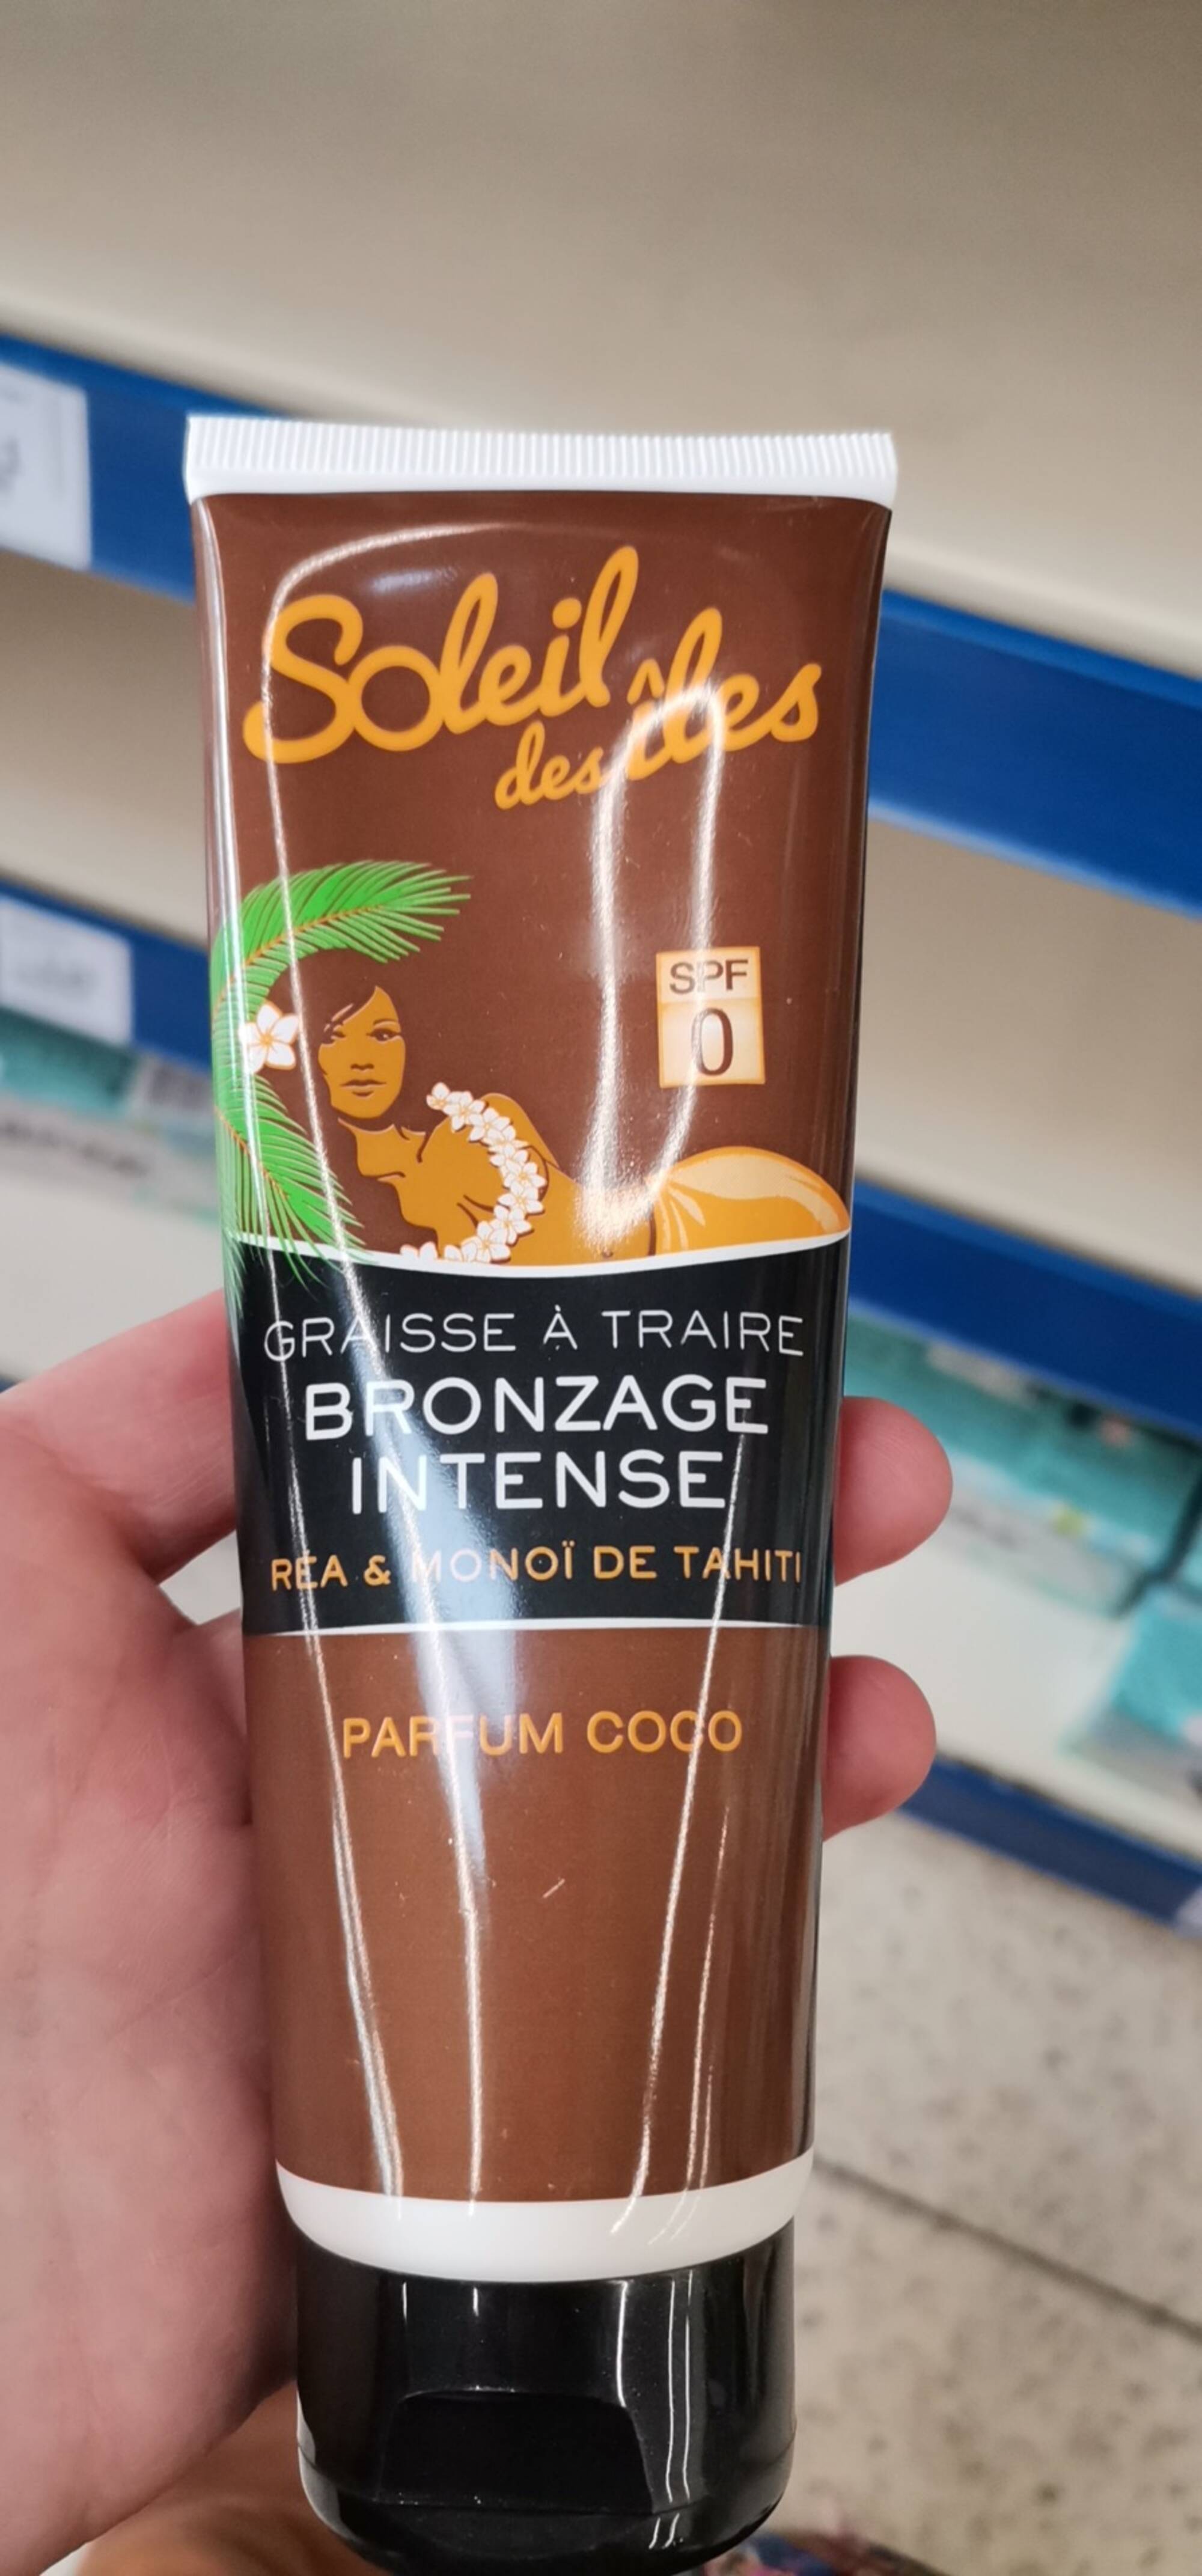 SOLEIL DES ILES - Graisse à traire bronzage intense parfum coco